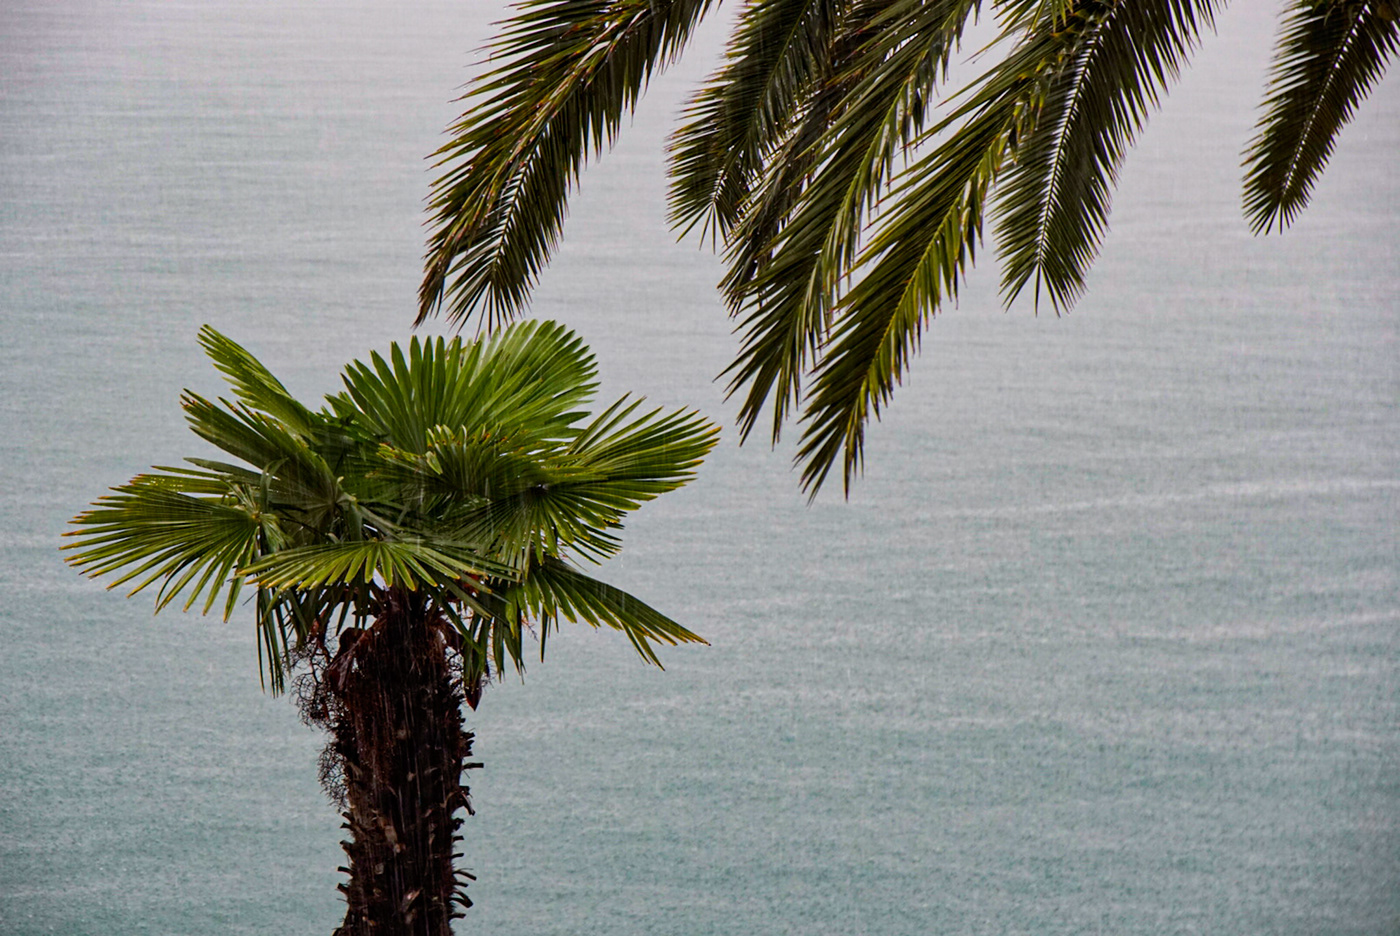 lago di garda palmtrees in the rain